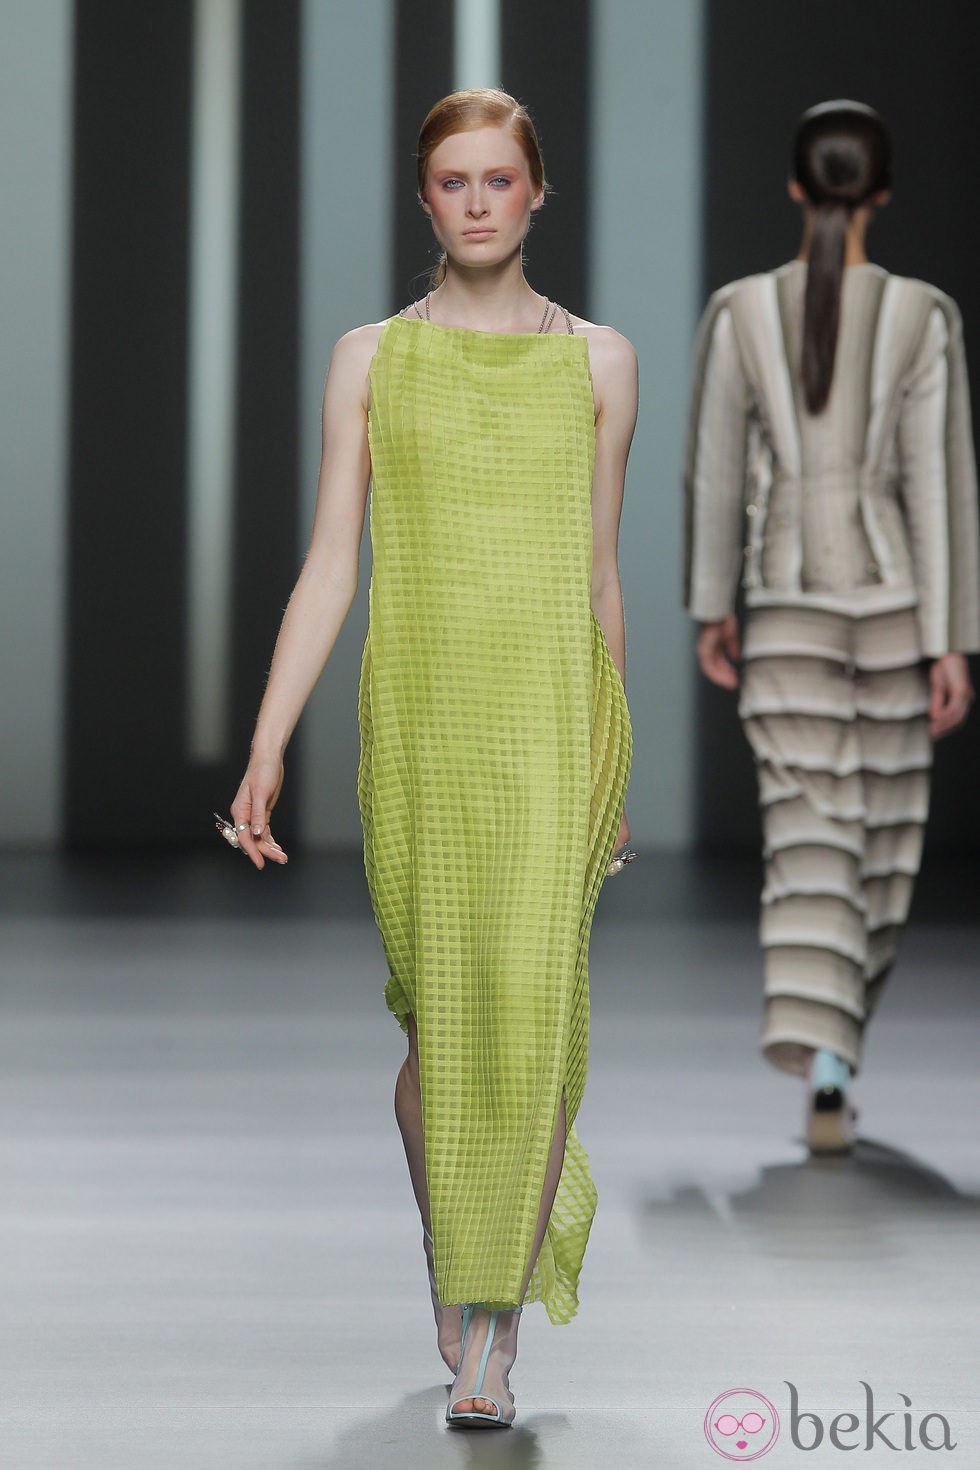 Vestido verde de Martín Lamothe, colección primavera/verano 2013